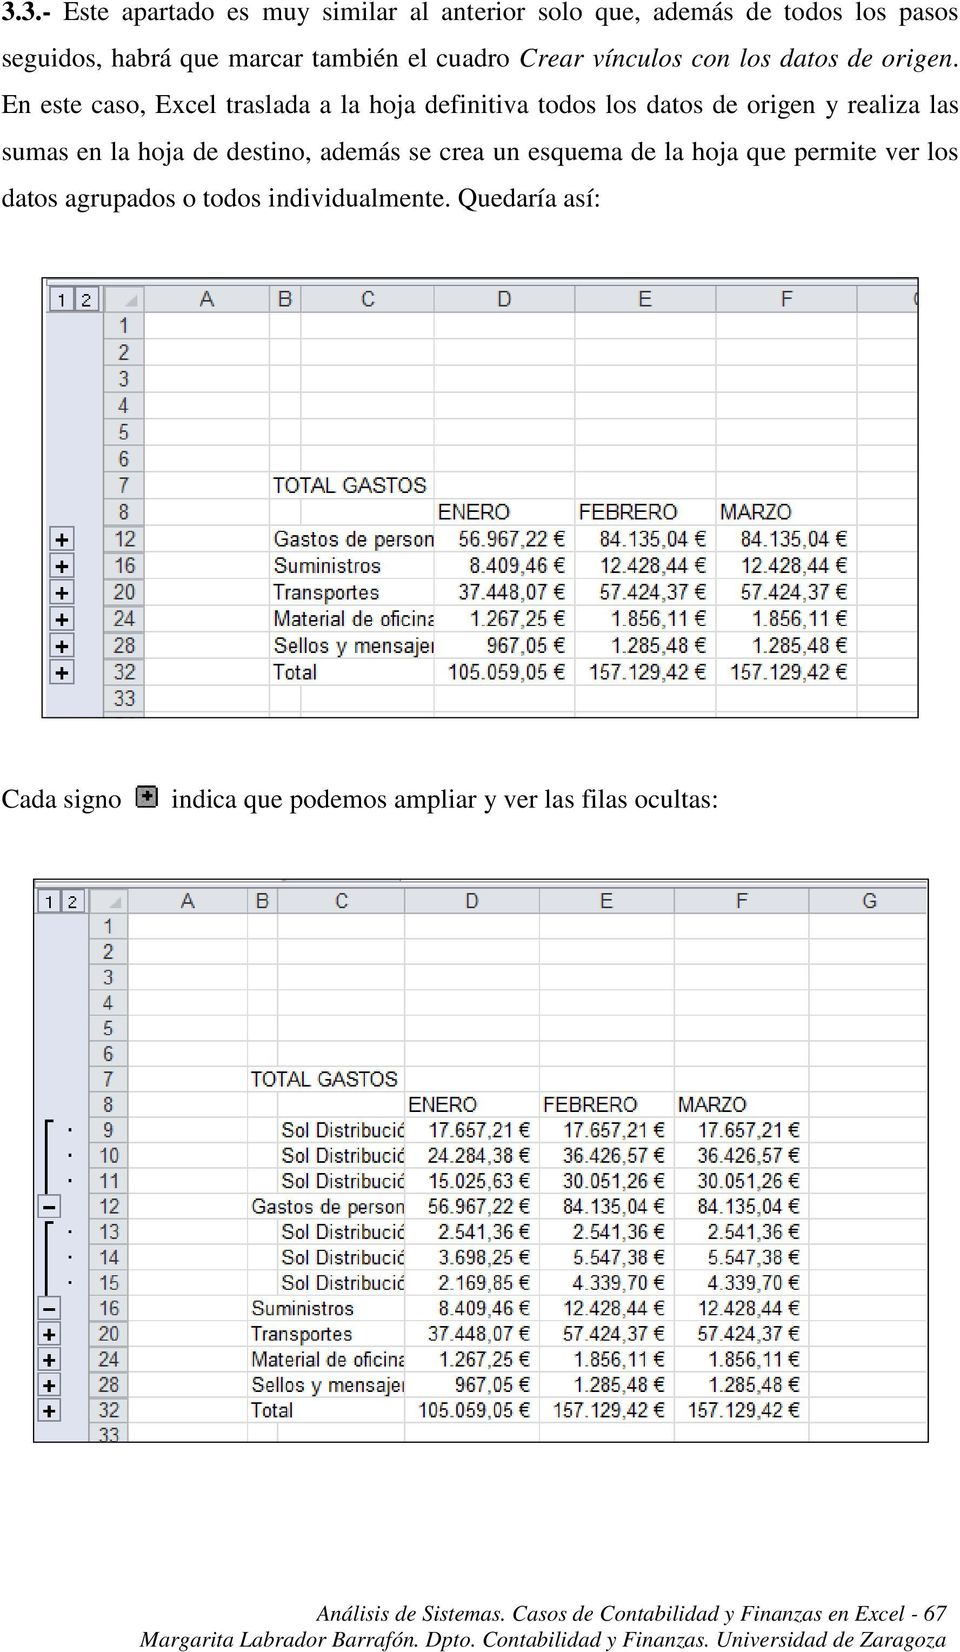 En este caso, Excel traslada a la hoja definitiva todos los datos de origen y realiza las sumas en la hoja de destino, además se